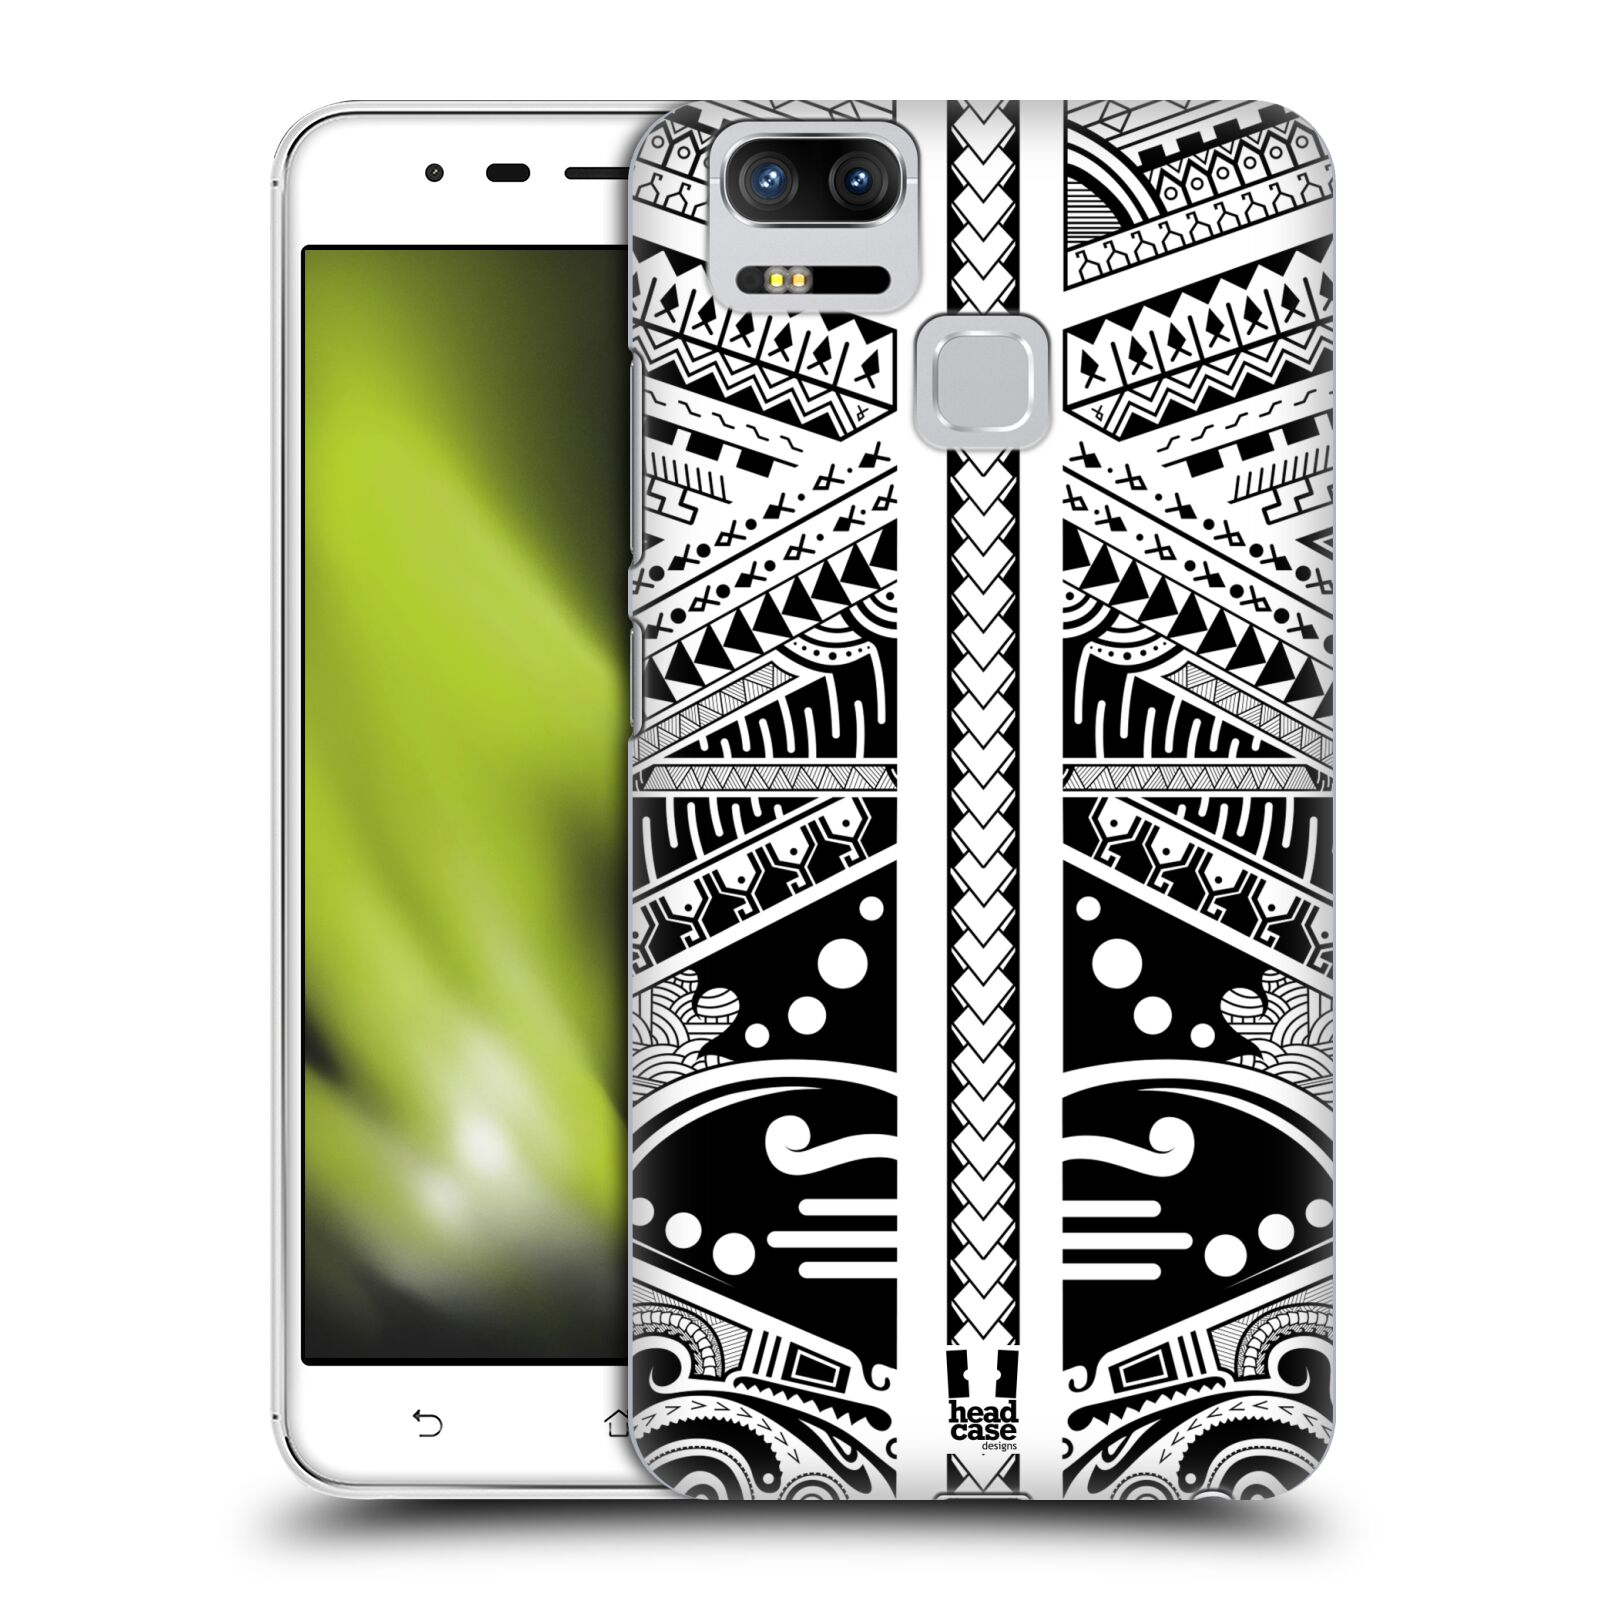 HEAD CASE plastový obal na mobil Asus Zenfone 3 Zoom ZE553KL vzor Maorské tetování motivy černá a bílá POLYNÉZIE